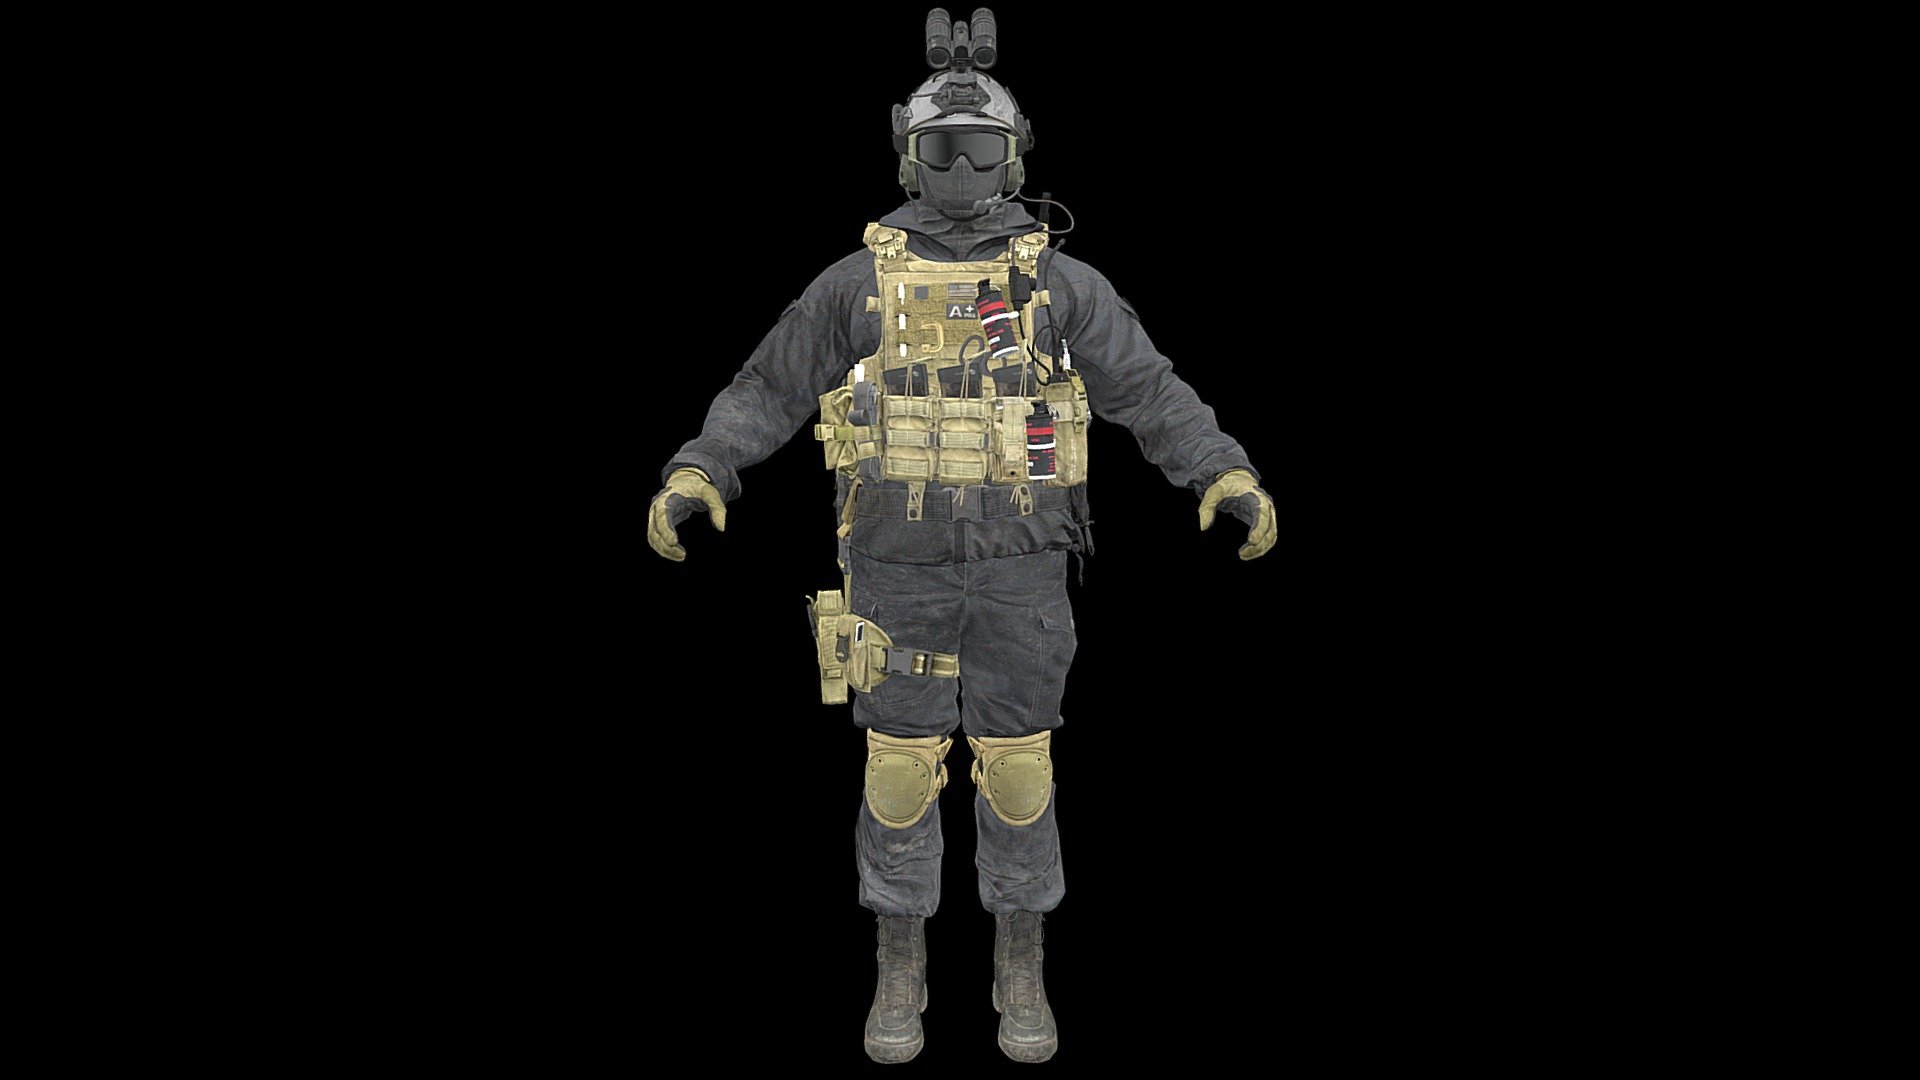 Call of Duty Modern Warfare 2019 - Mil-Sim: Shadow Company III - Modern Warfare 2019 - Mil-Sim Shadow Company III - 3D model by 3XtrEmE 3d model